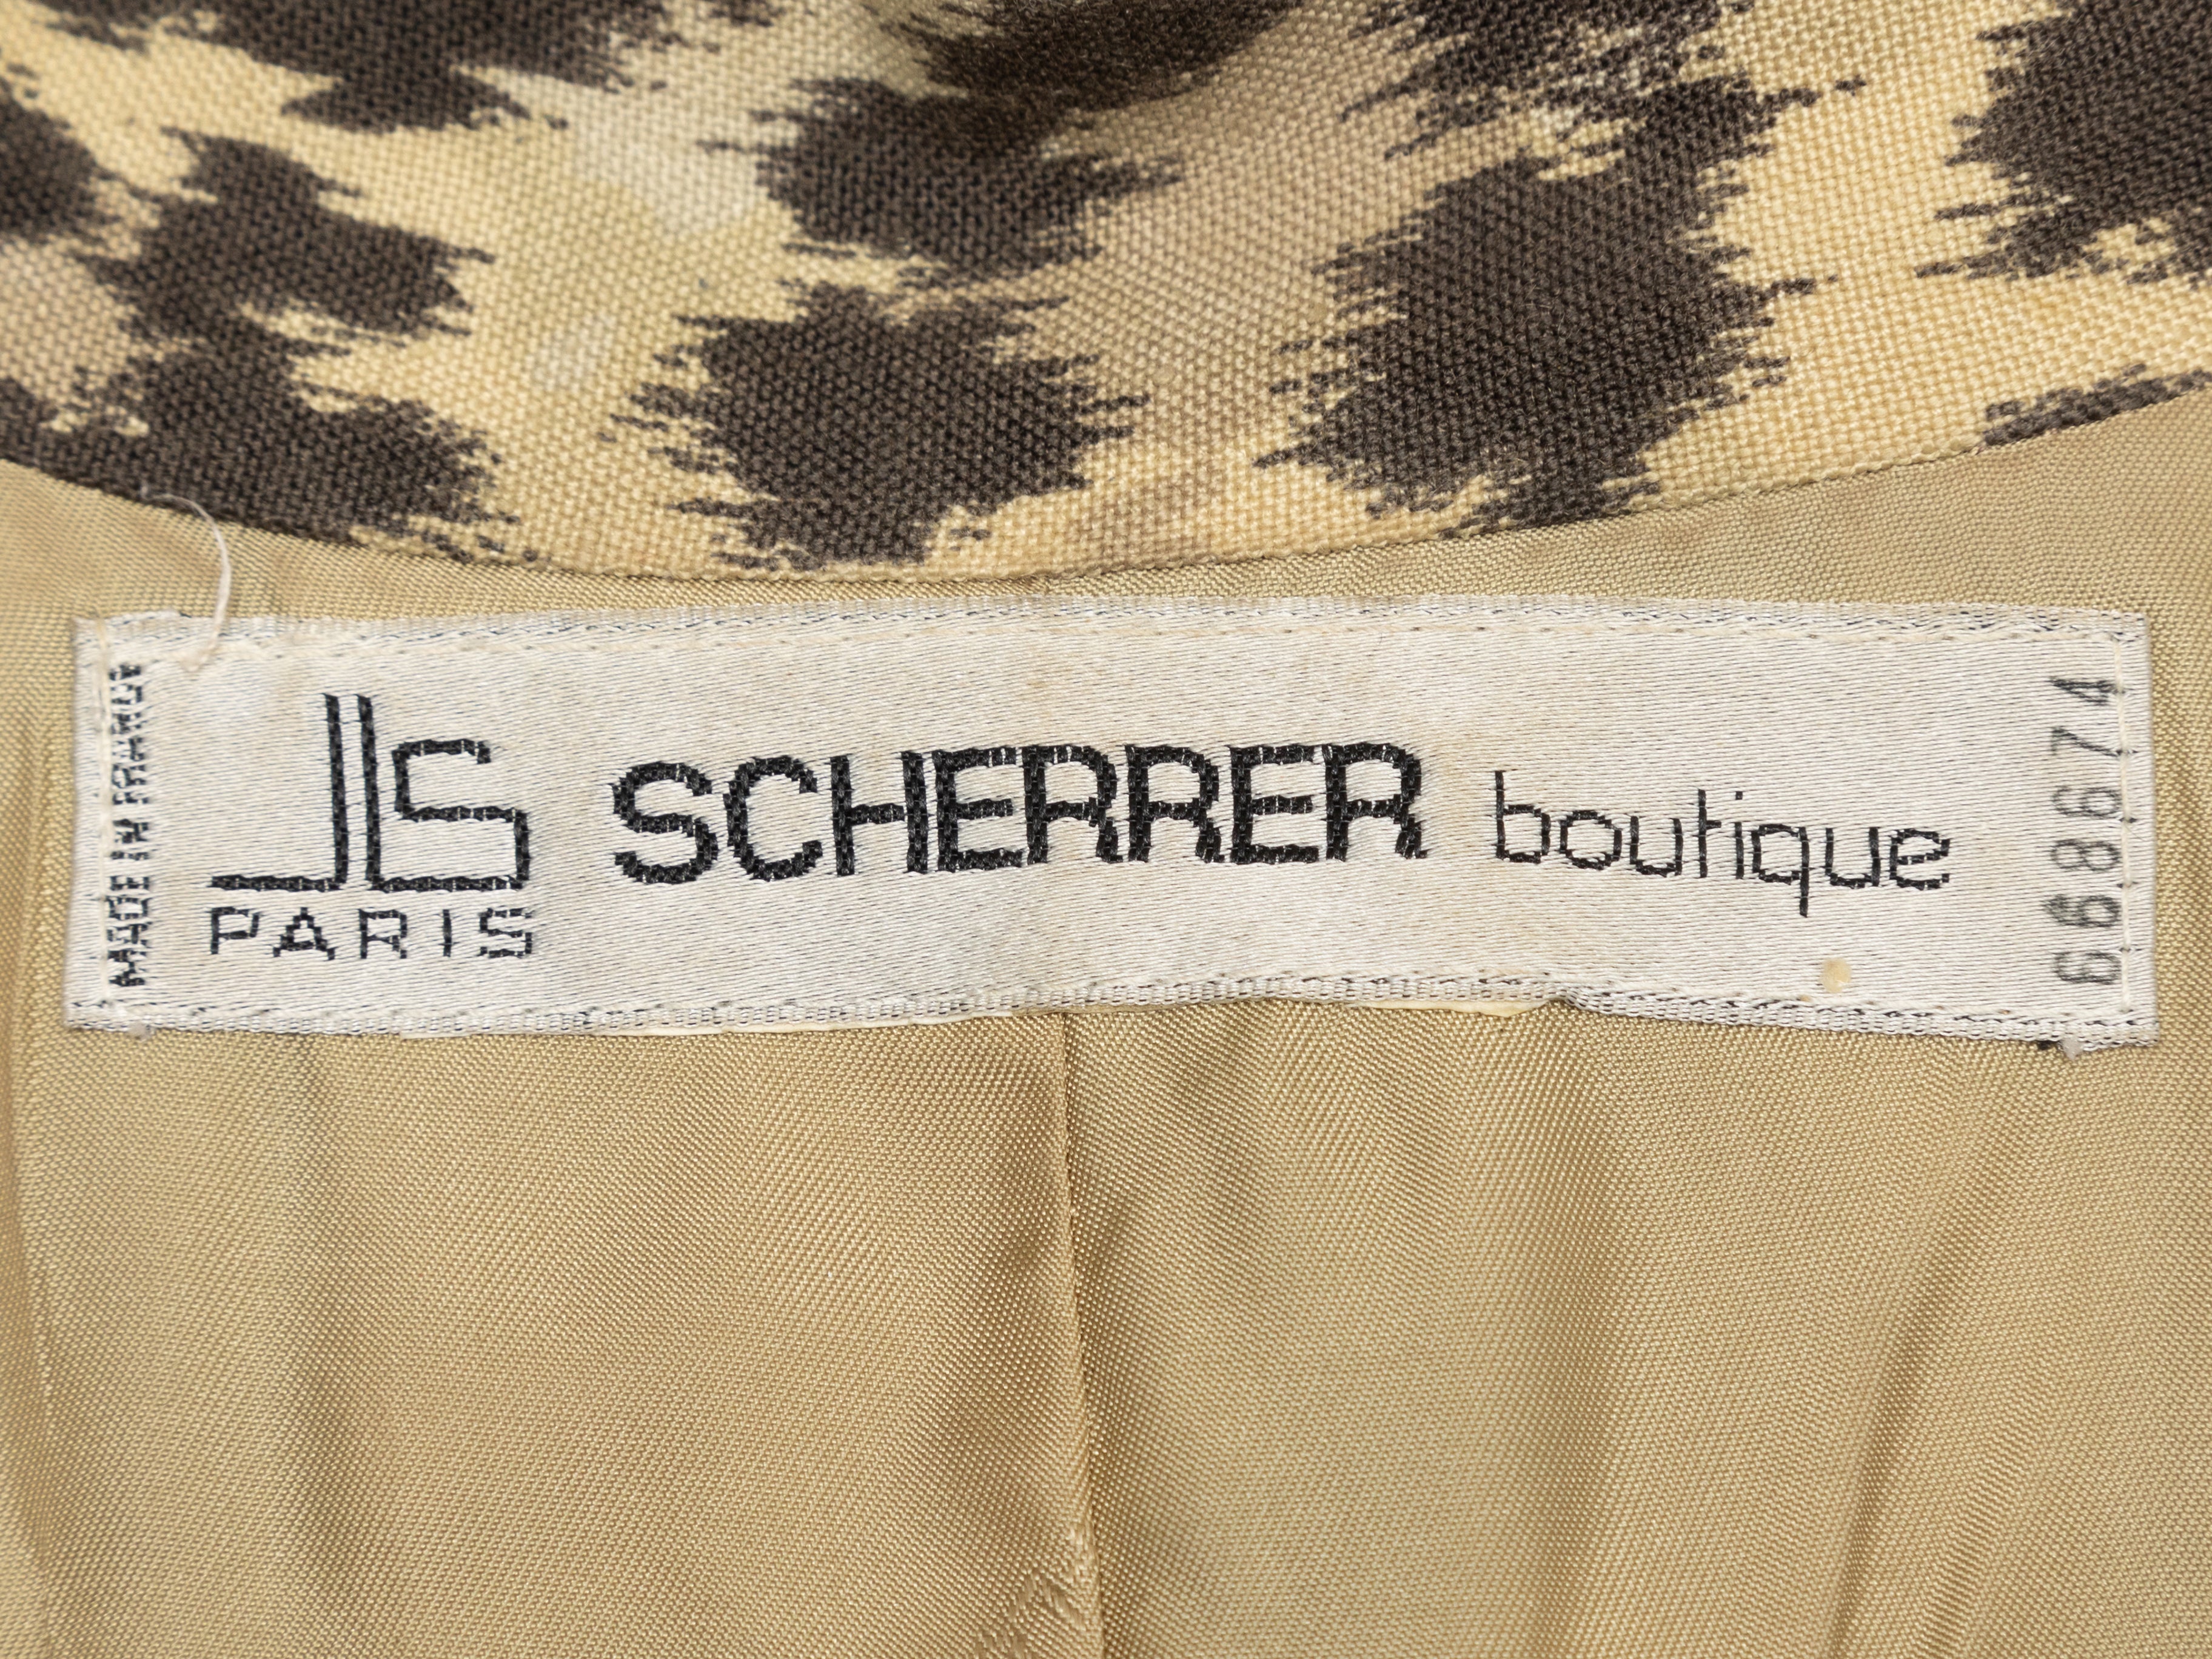 Jean-Louis Scherrer Handbags & Bags for Women for sale